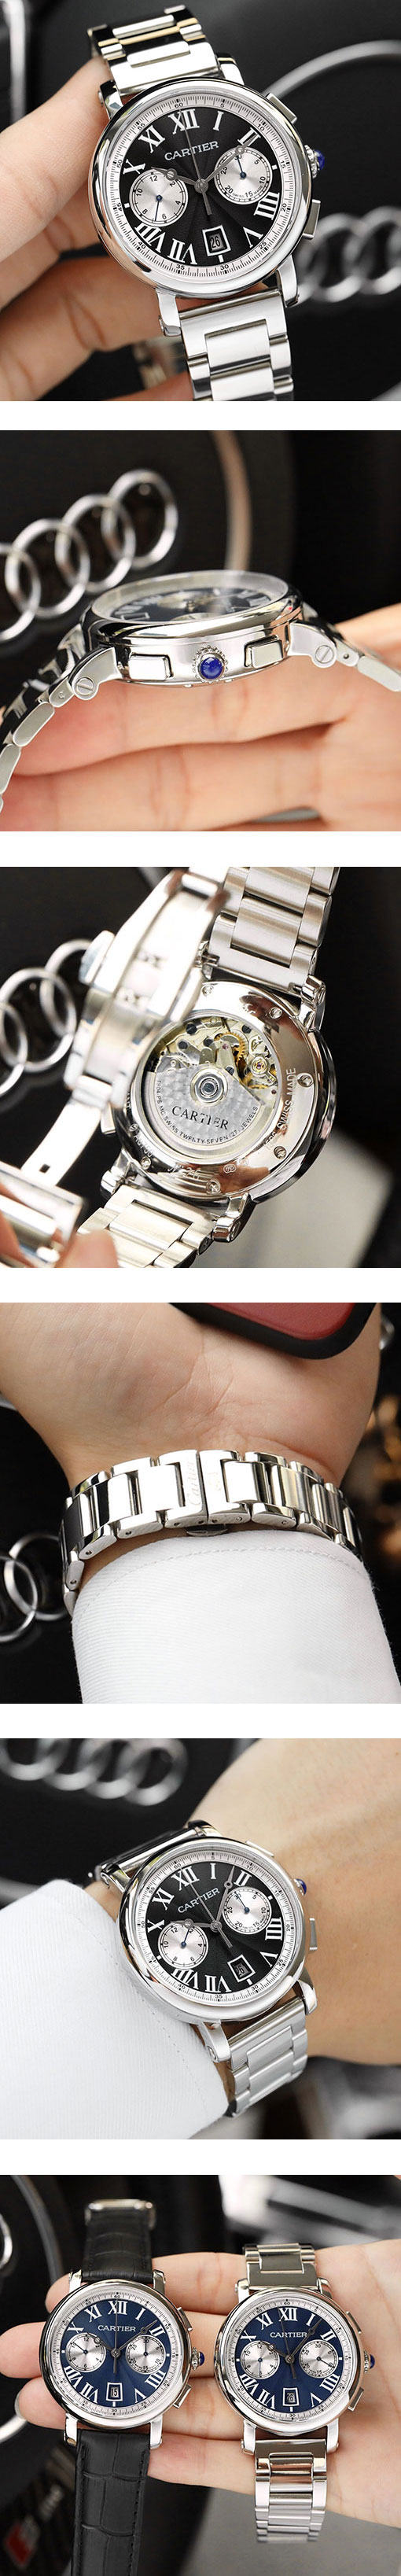 カルティエコピー時計最新品 ロトンド ドゥ カルティエ クロノグラフ WSRO0002 ブラック